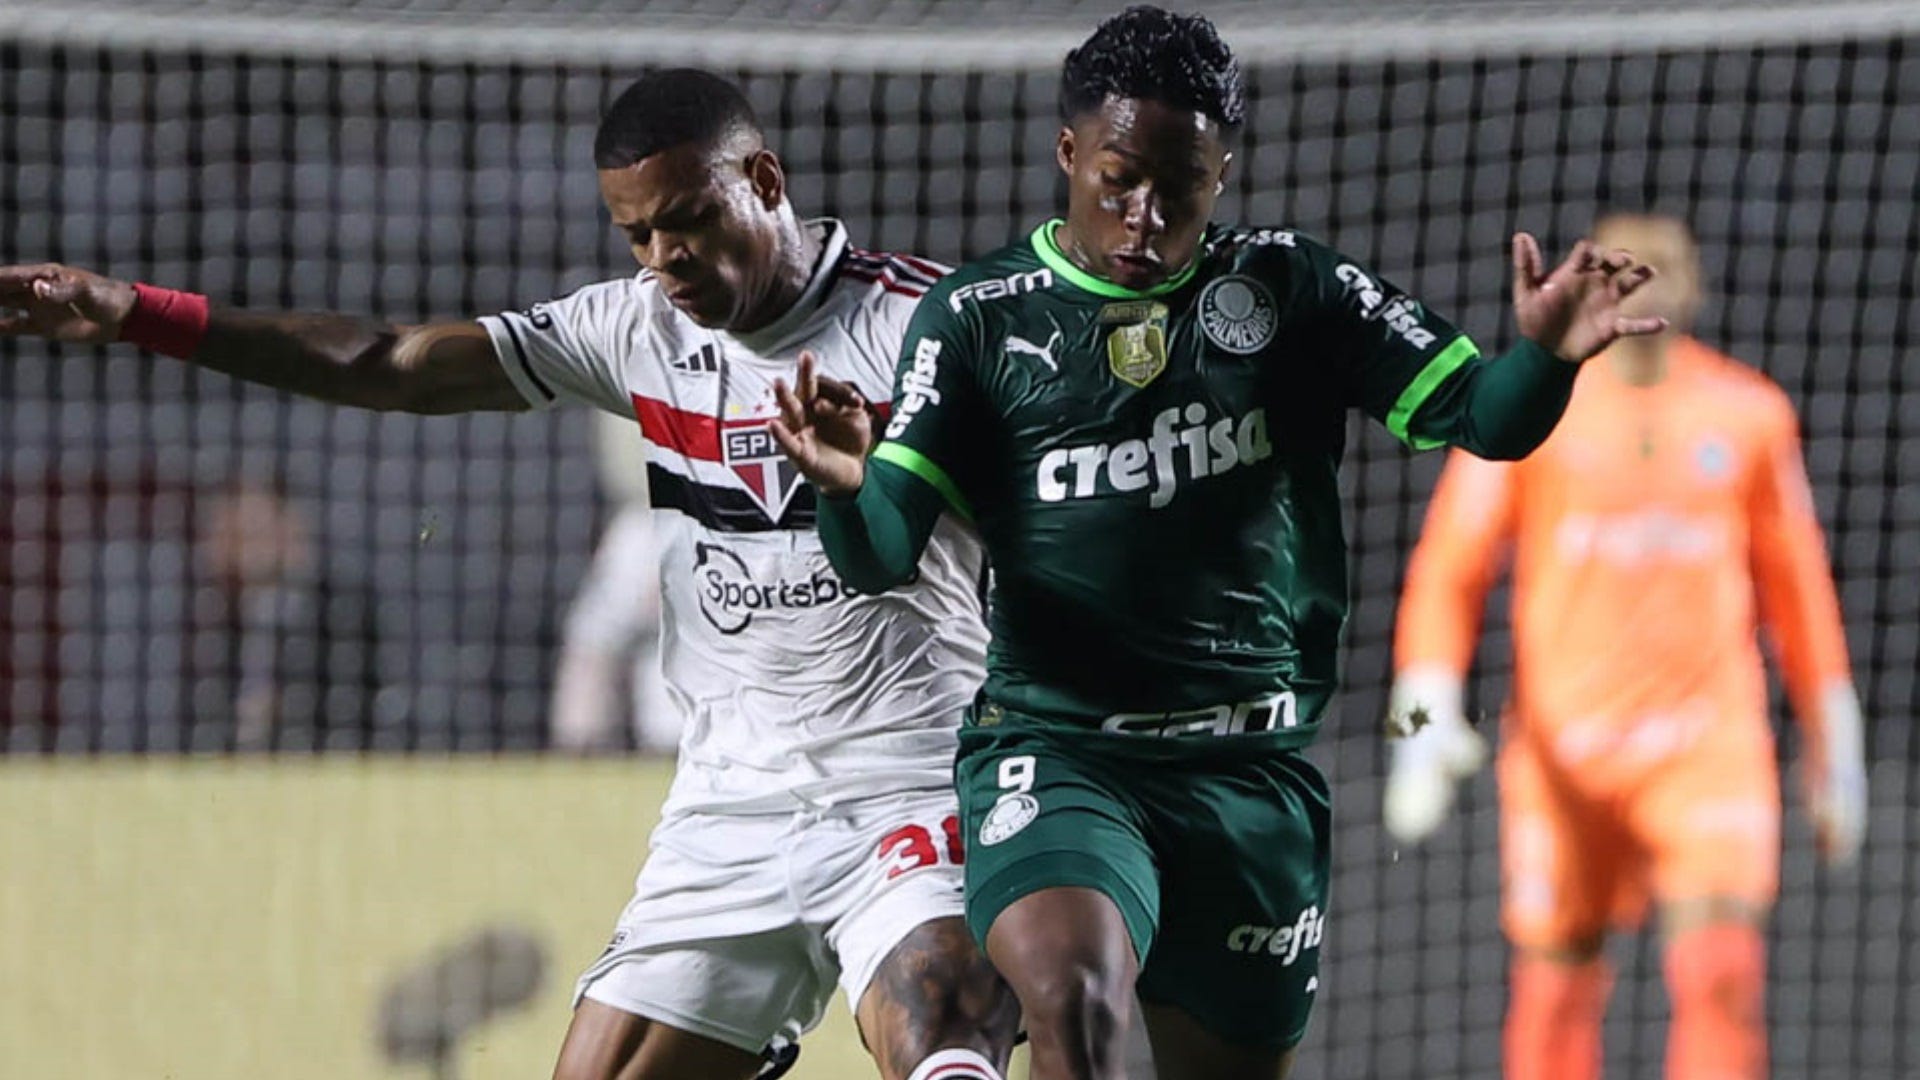 Palmeiras x São Paulo: Prováveis escalações, onde assistir e